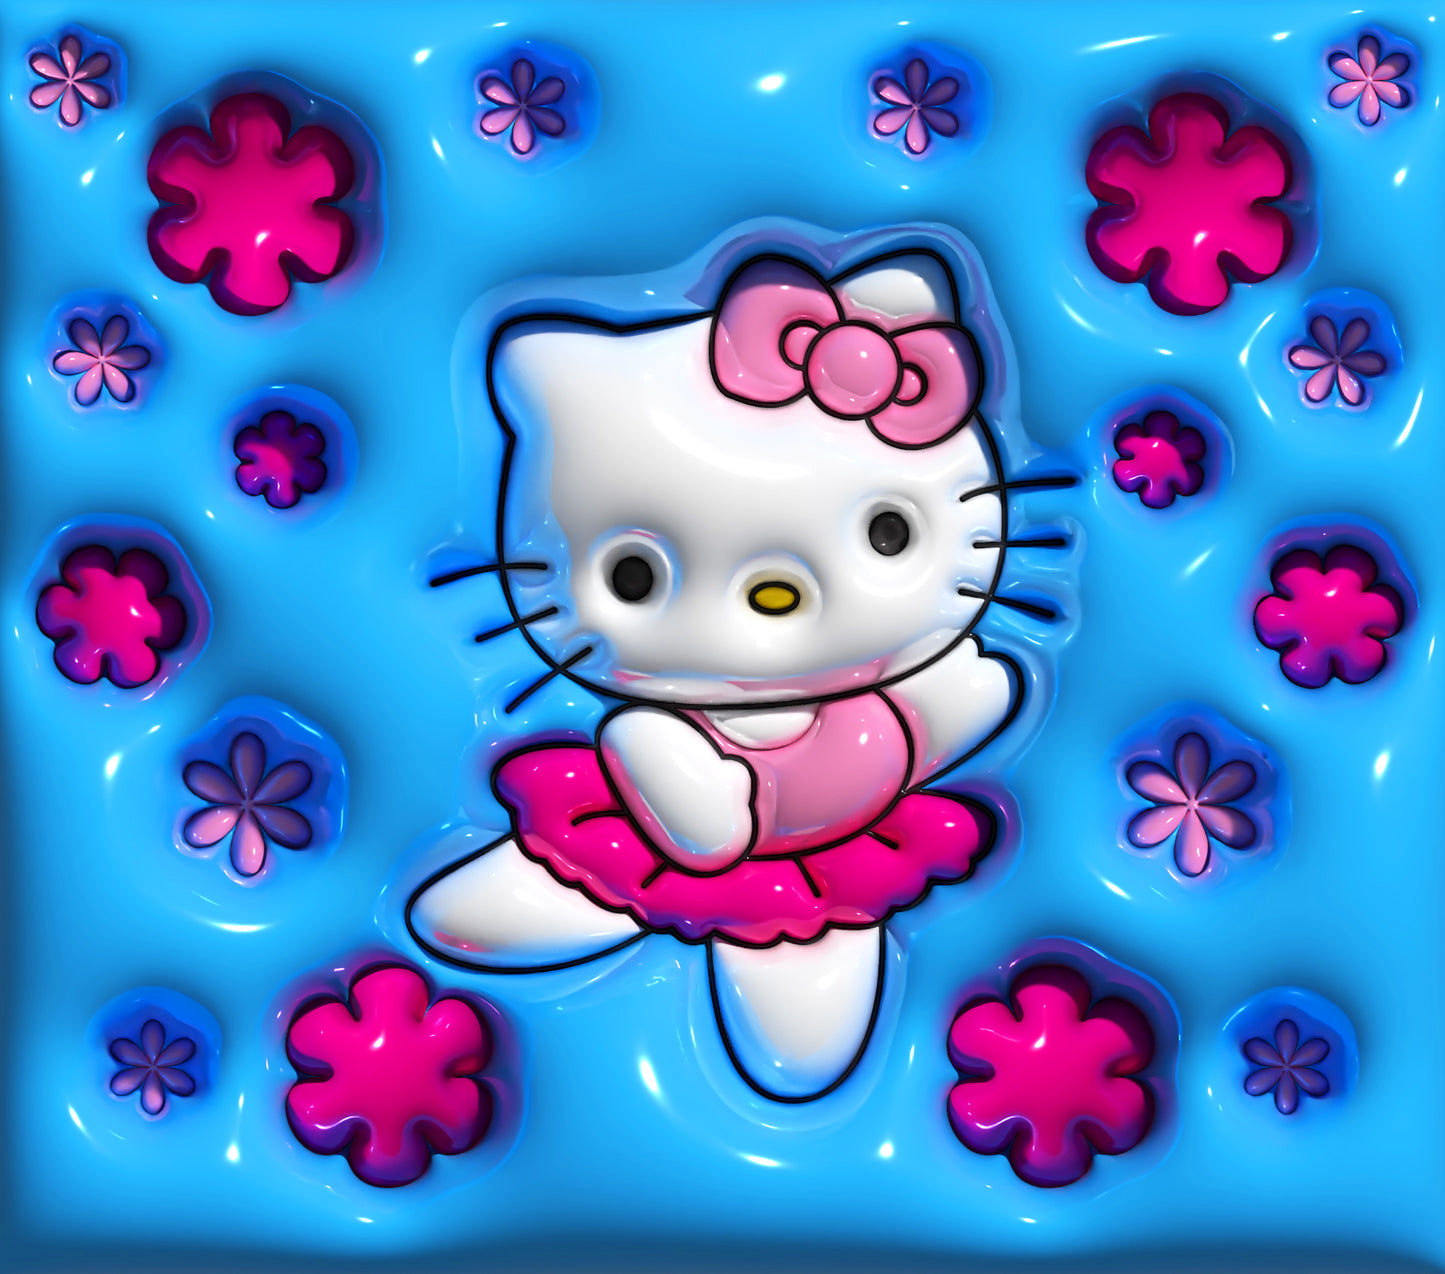 20 oz. Stainless Tumbler - Hello Kitty